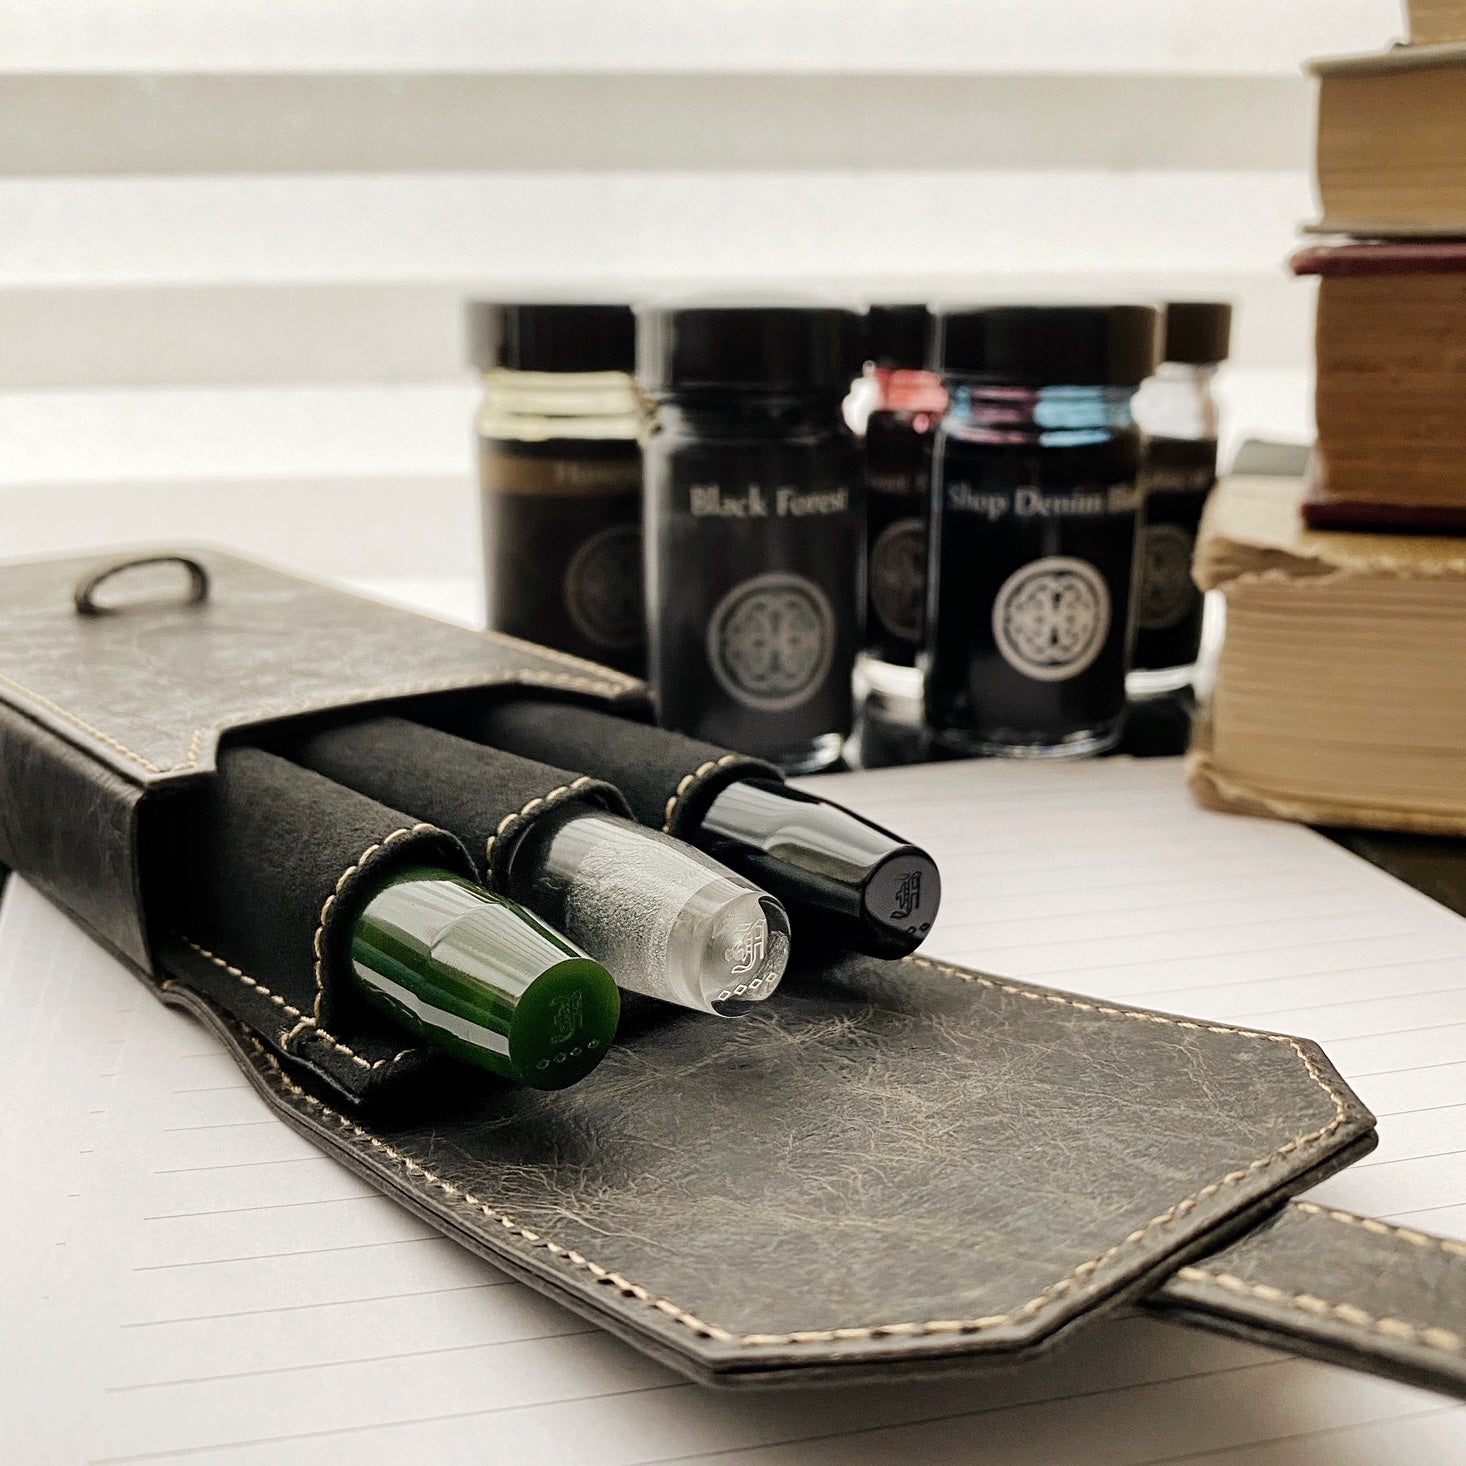 Franklin-Christoph Leather Pen Case - 3 Pens - Black